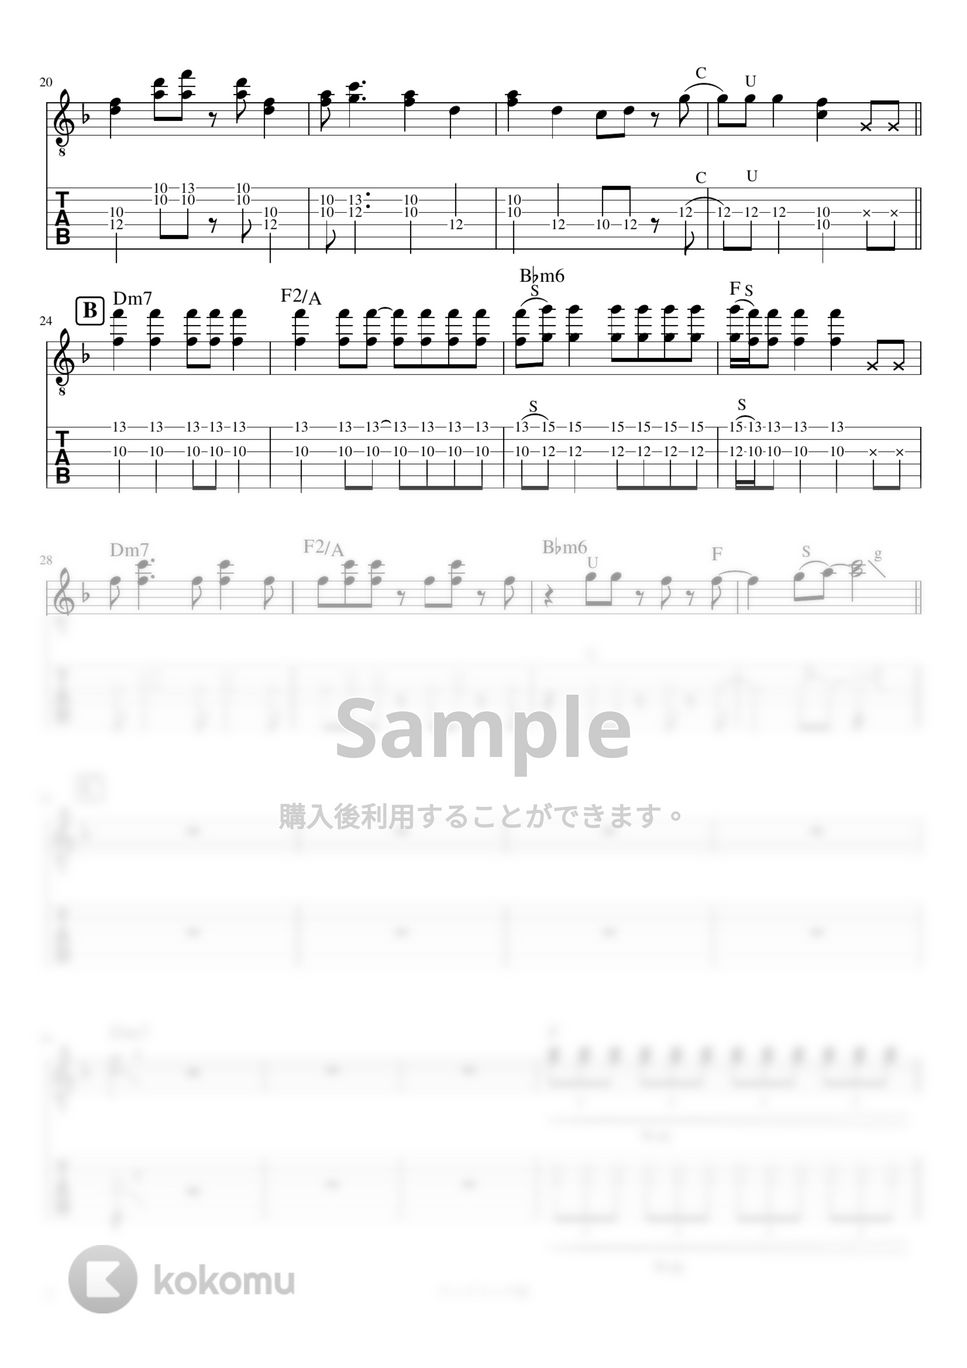 マカロニえんぴつ - ワンドリンク別 (リードギター) by J-ROCKチャンネル